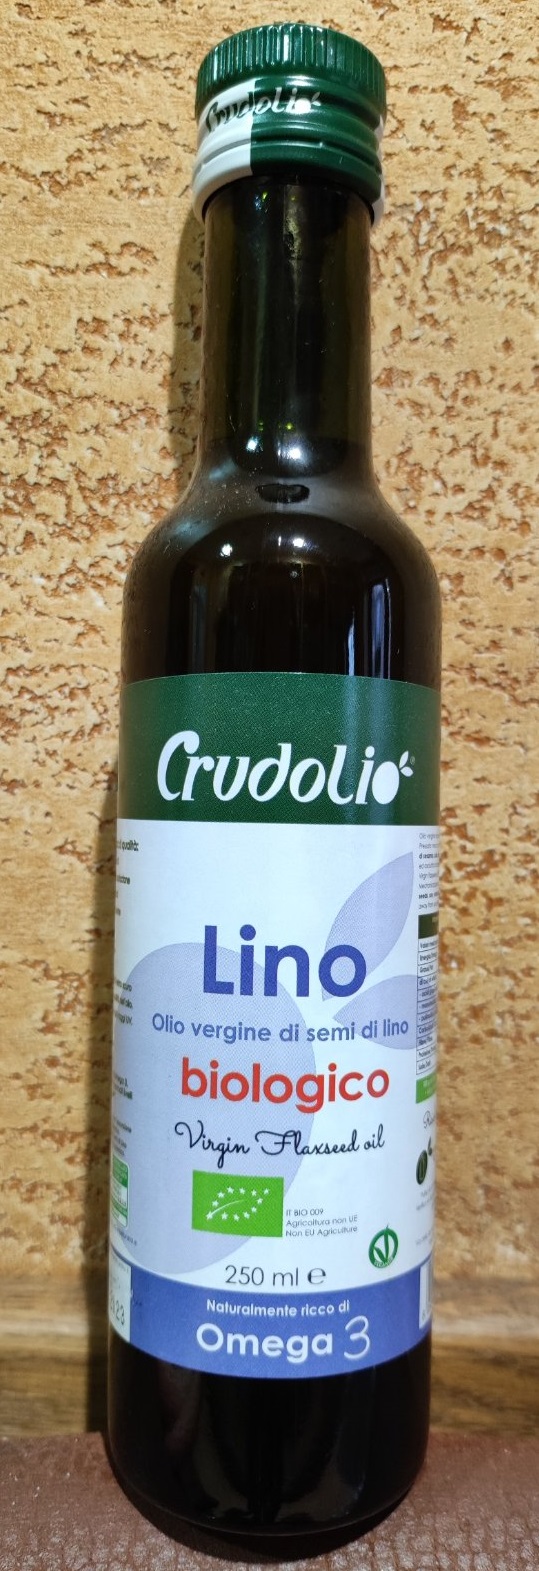 Льняное масло Crudolio Olio di semi di lino Biologico первый холодный отжим семя льна, Омега 3, Омега 6. Италия